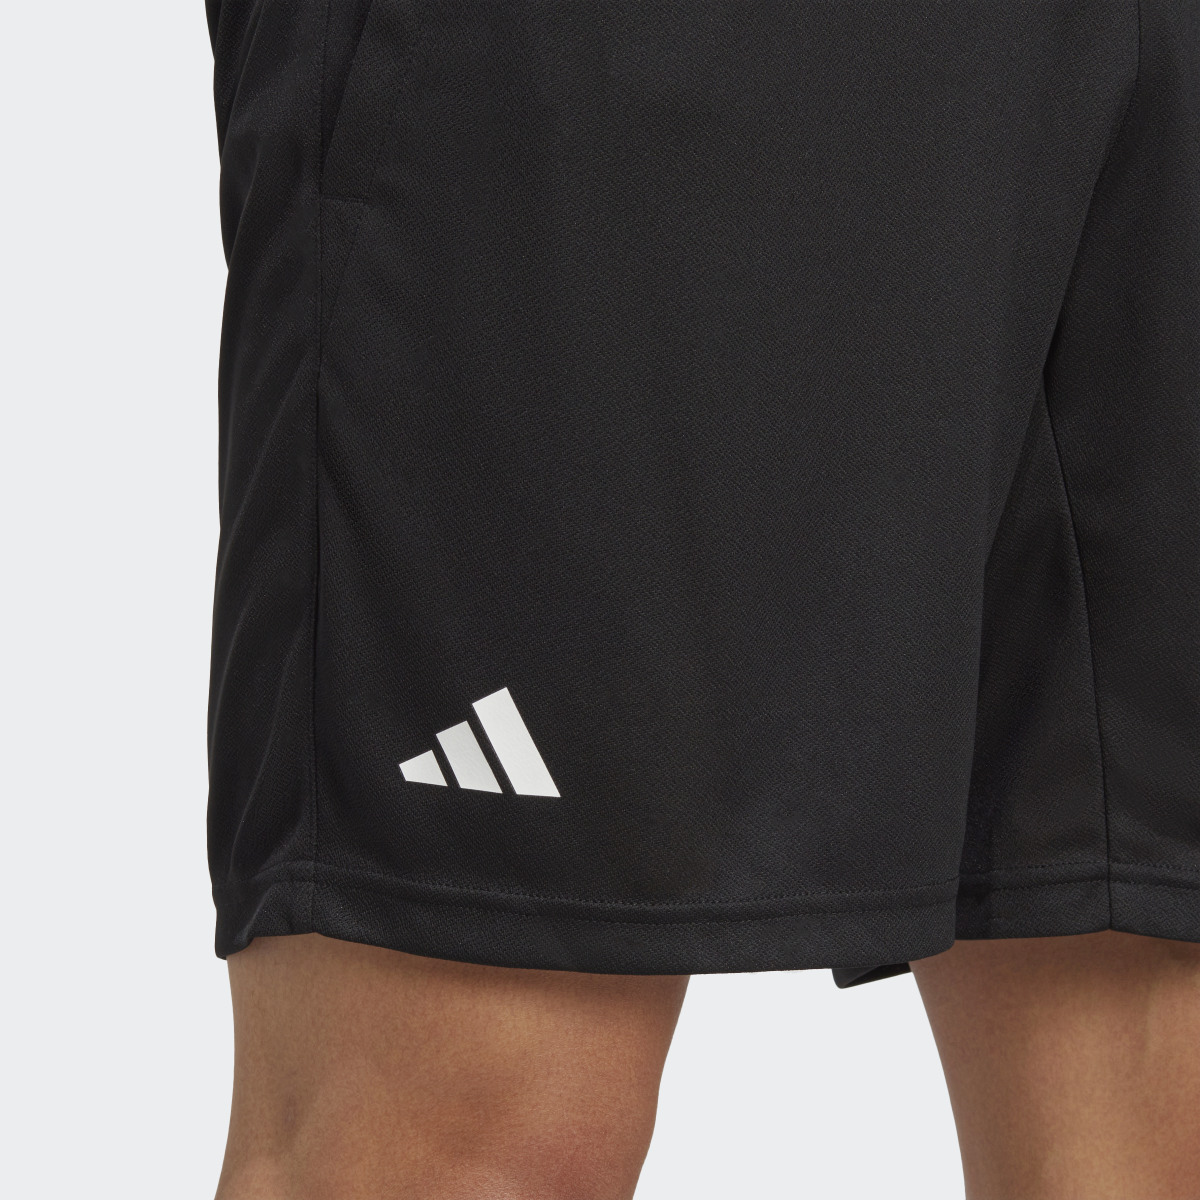 Adidas HEAT.RDY Knit Tennis Shorts. 5